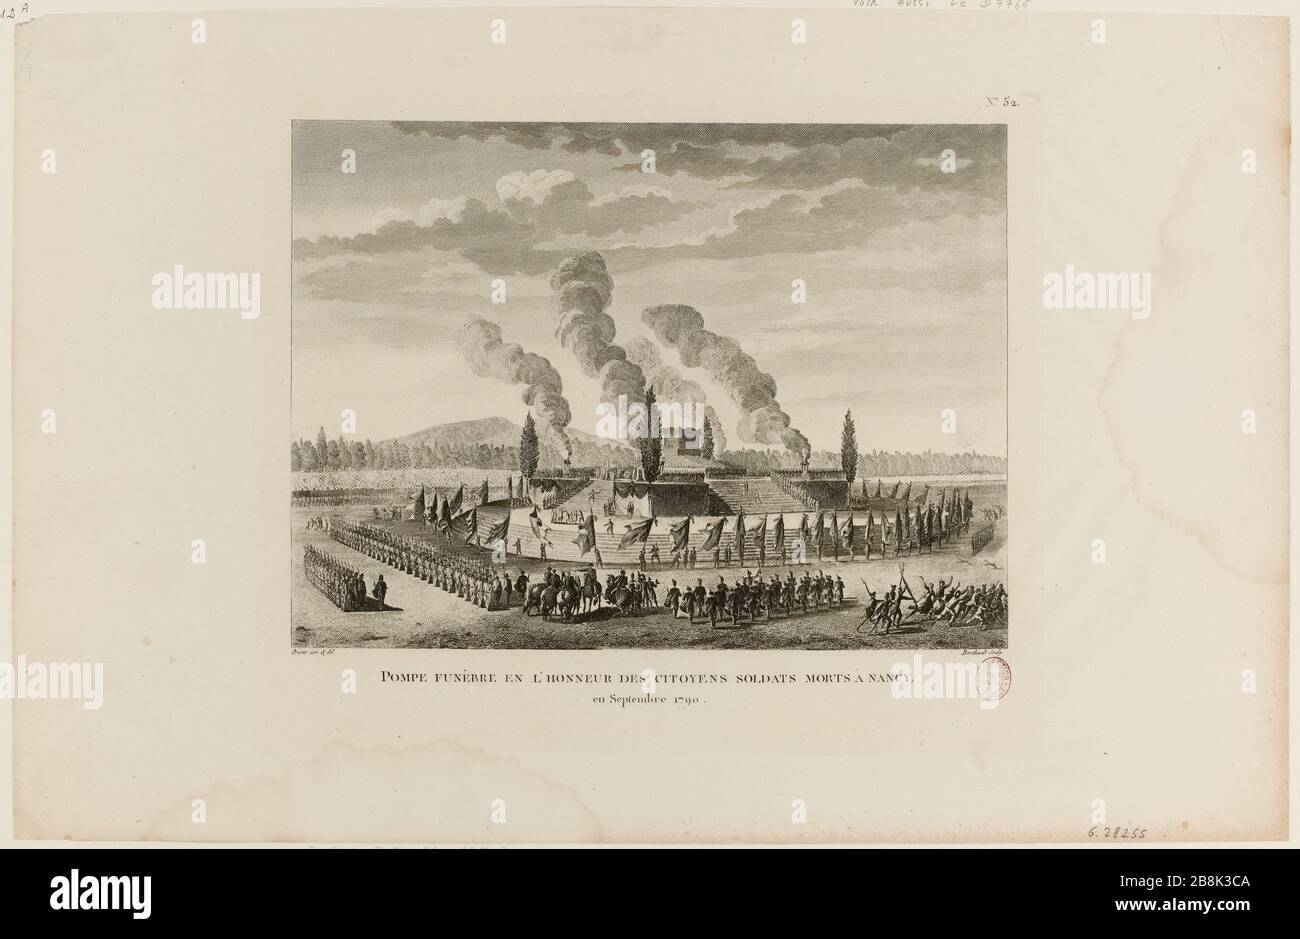 Pumps Deutsch en l'honneur des citoyens indistinguishable morts in Nancy, in September 1790. (TI) Stock Photo